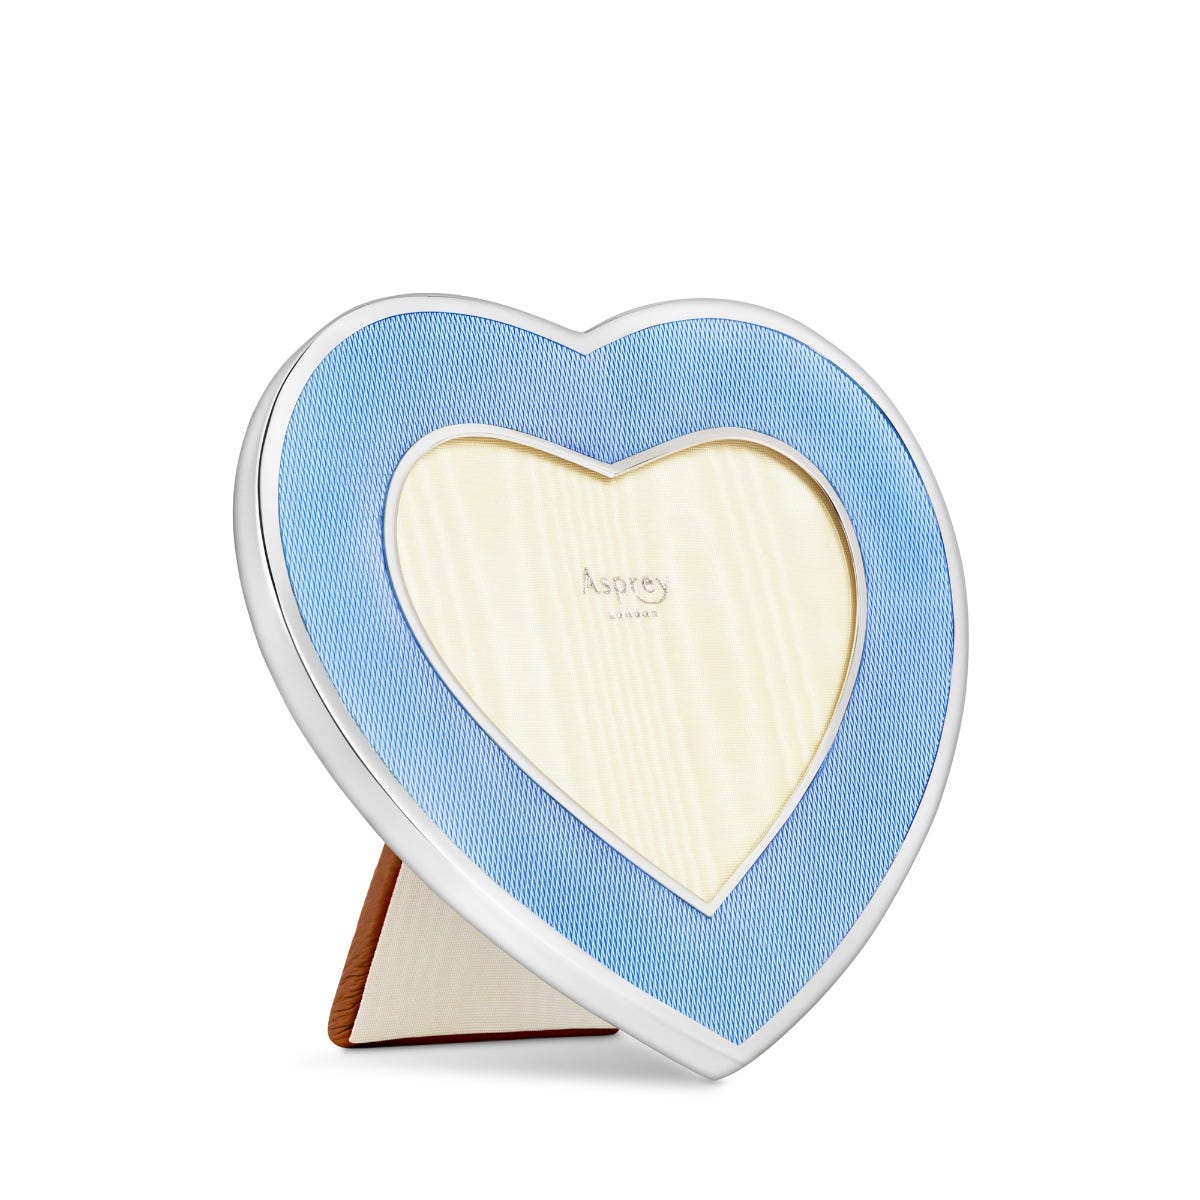 Heart shaped Enamel Frame, 4" x 3", Blue